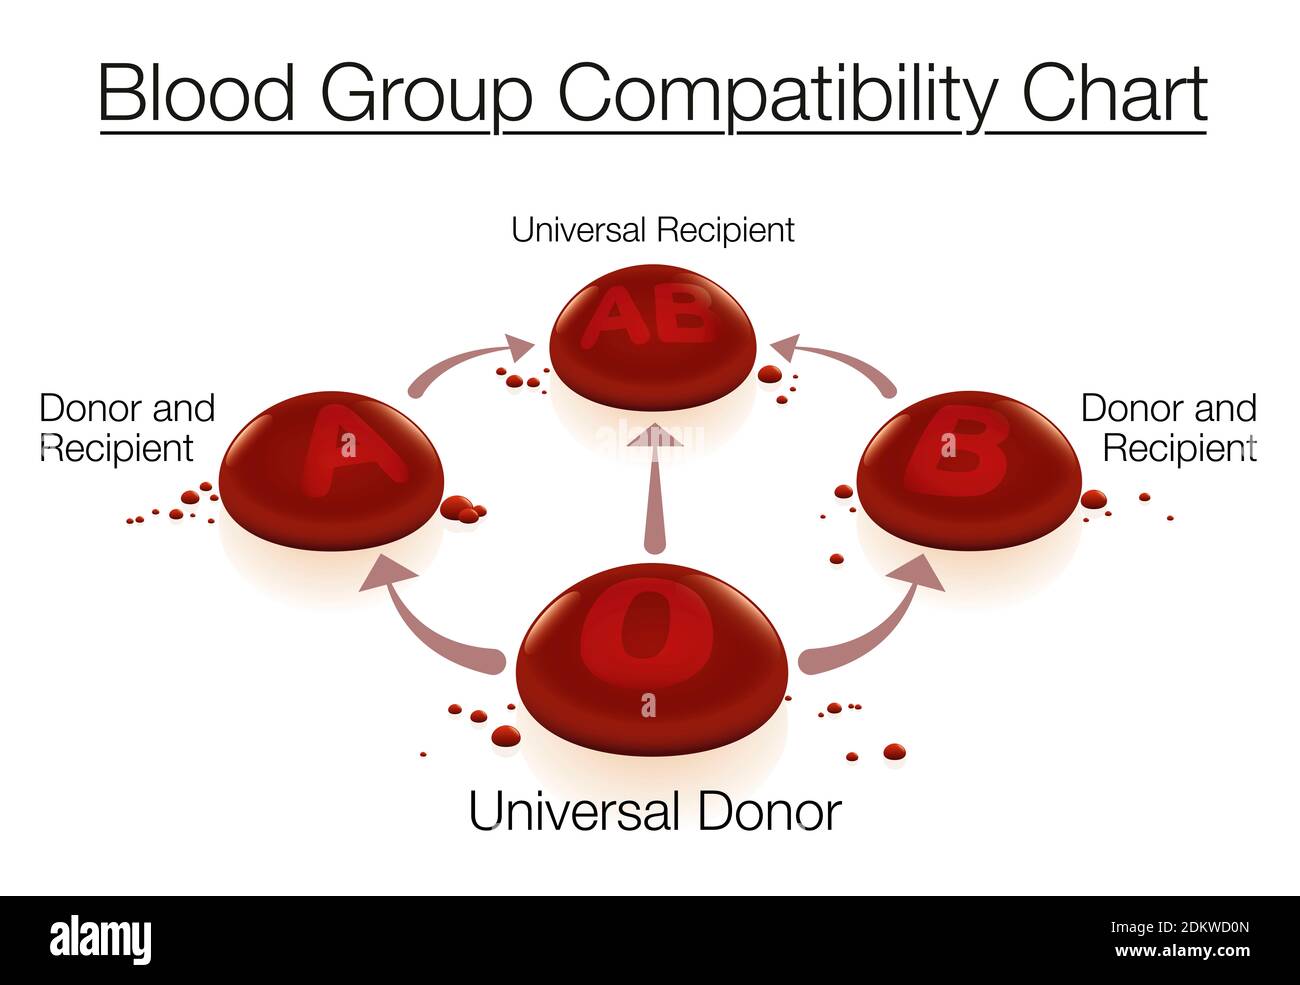 Cuadro de compatibilidad de grupos sanguíneos con el donante universal 0 y el receptor universal AB - en relación con la donación de sangre y la transfusión, representado con flechas. Foto de stock